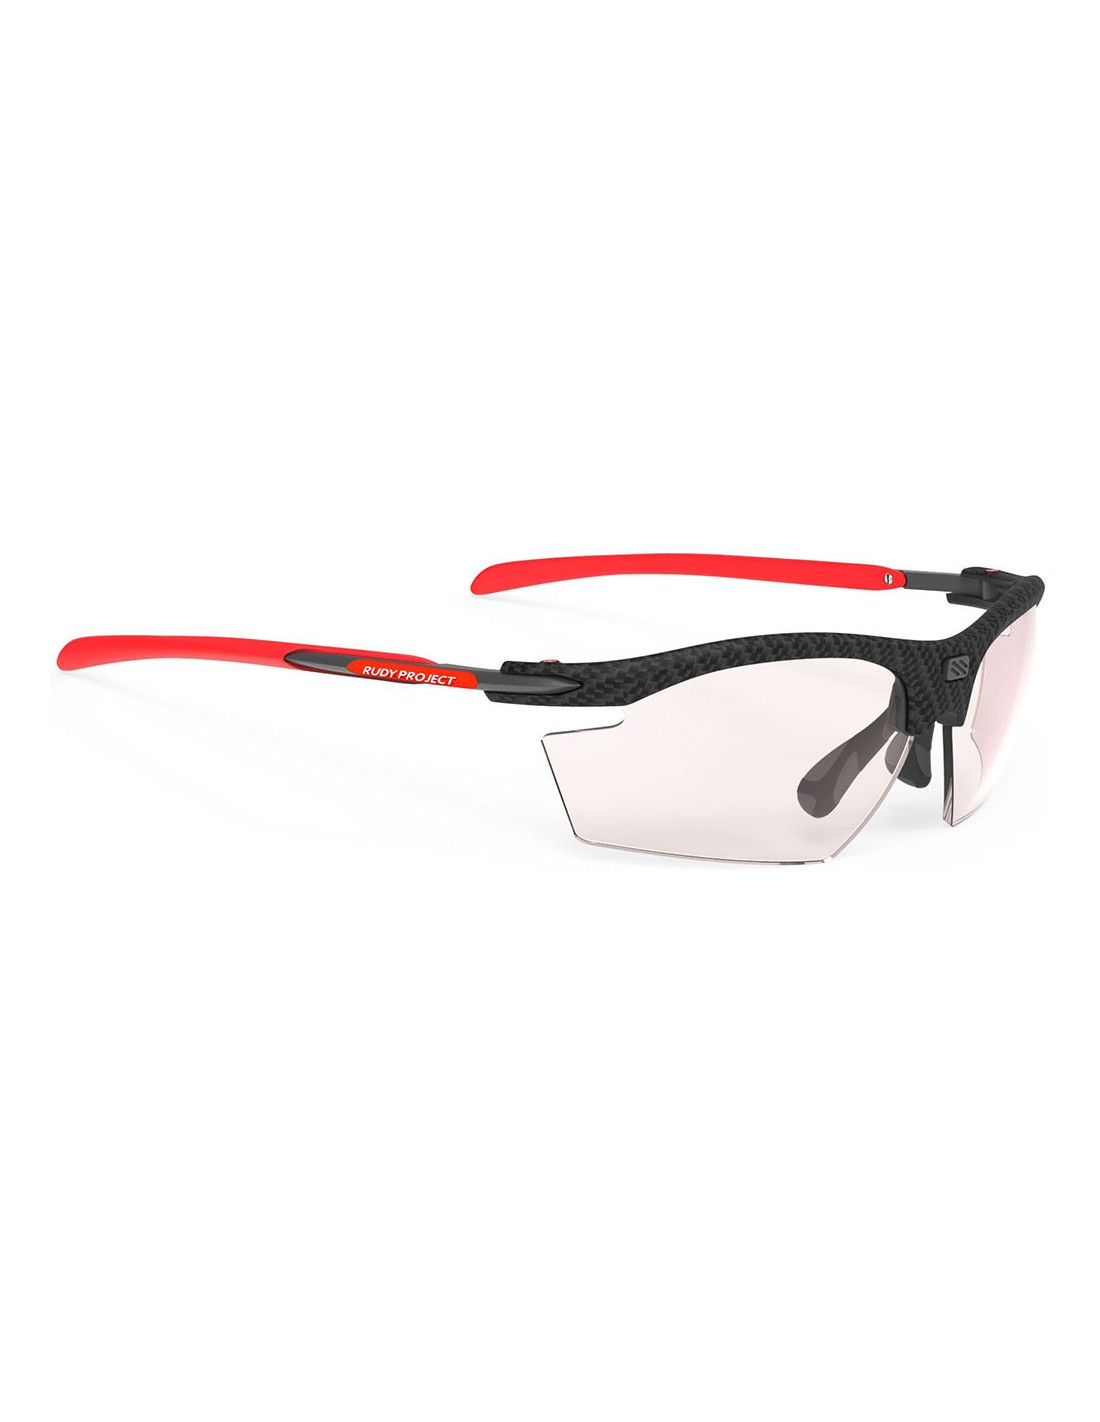 Nota Volver a llamar bronce gafas rudy project modelo rydon con lentes fotocromaticas rojas